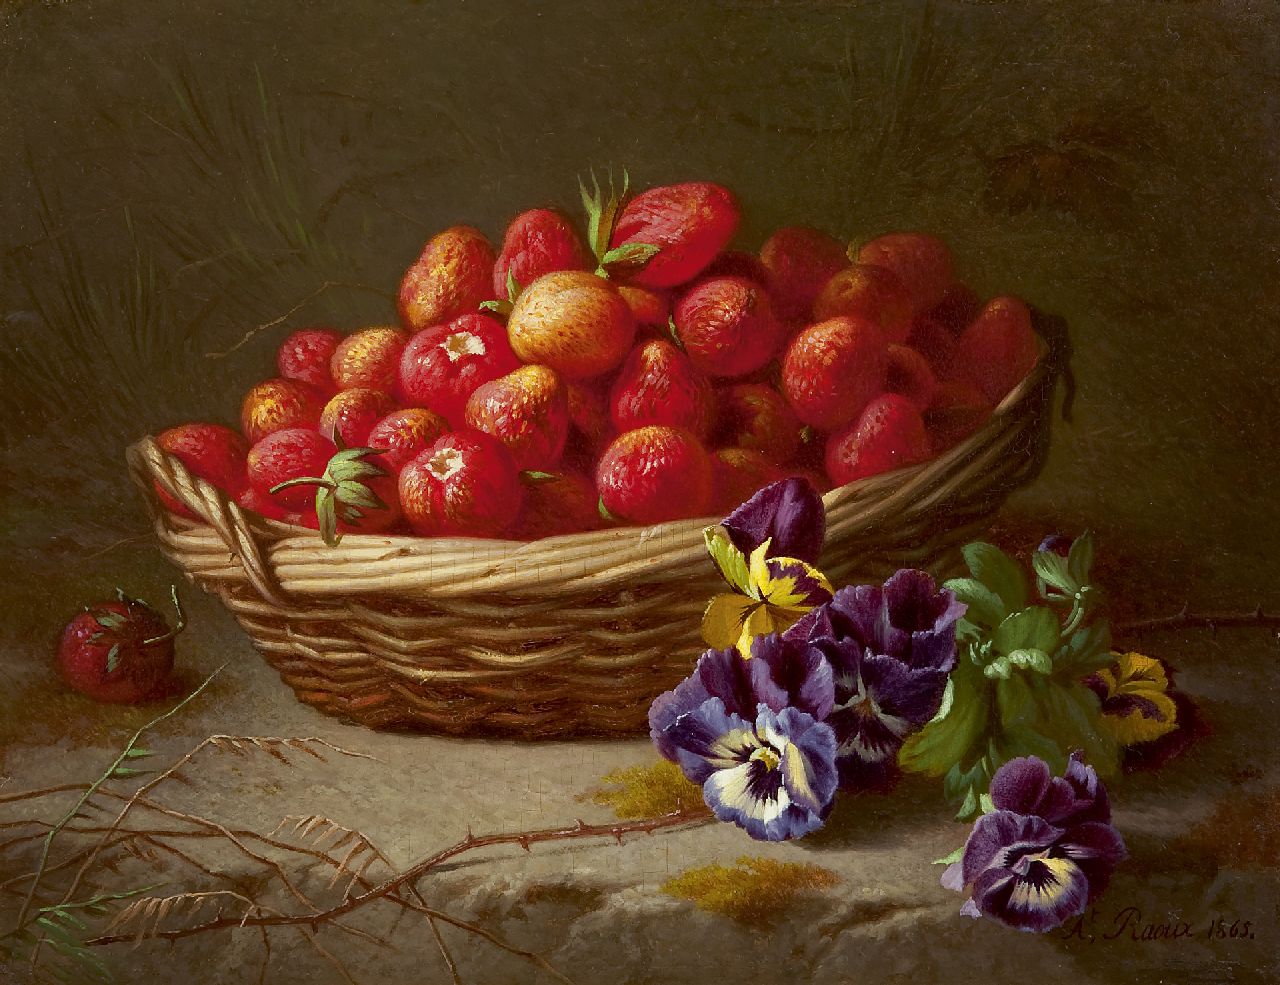 Albert Raoux | Aardbeien in mand, olieverf op paneel, 27,9 x 36,2 cm, gesigneerd r.o. en gedateerd 1865